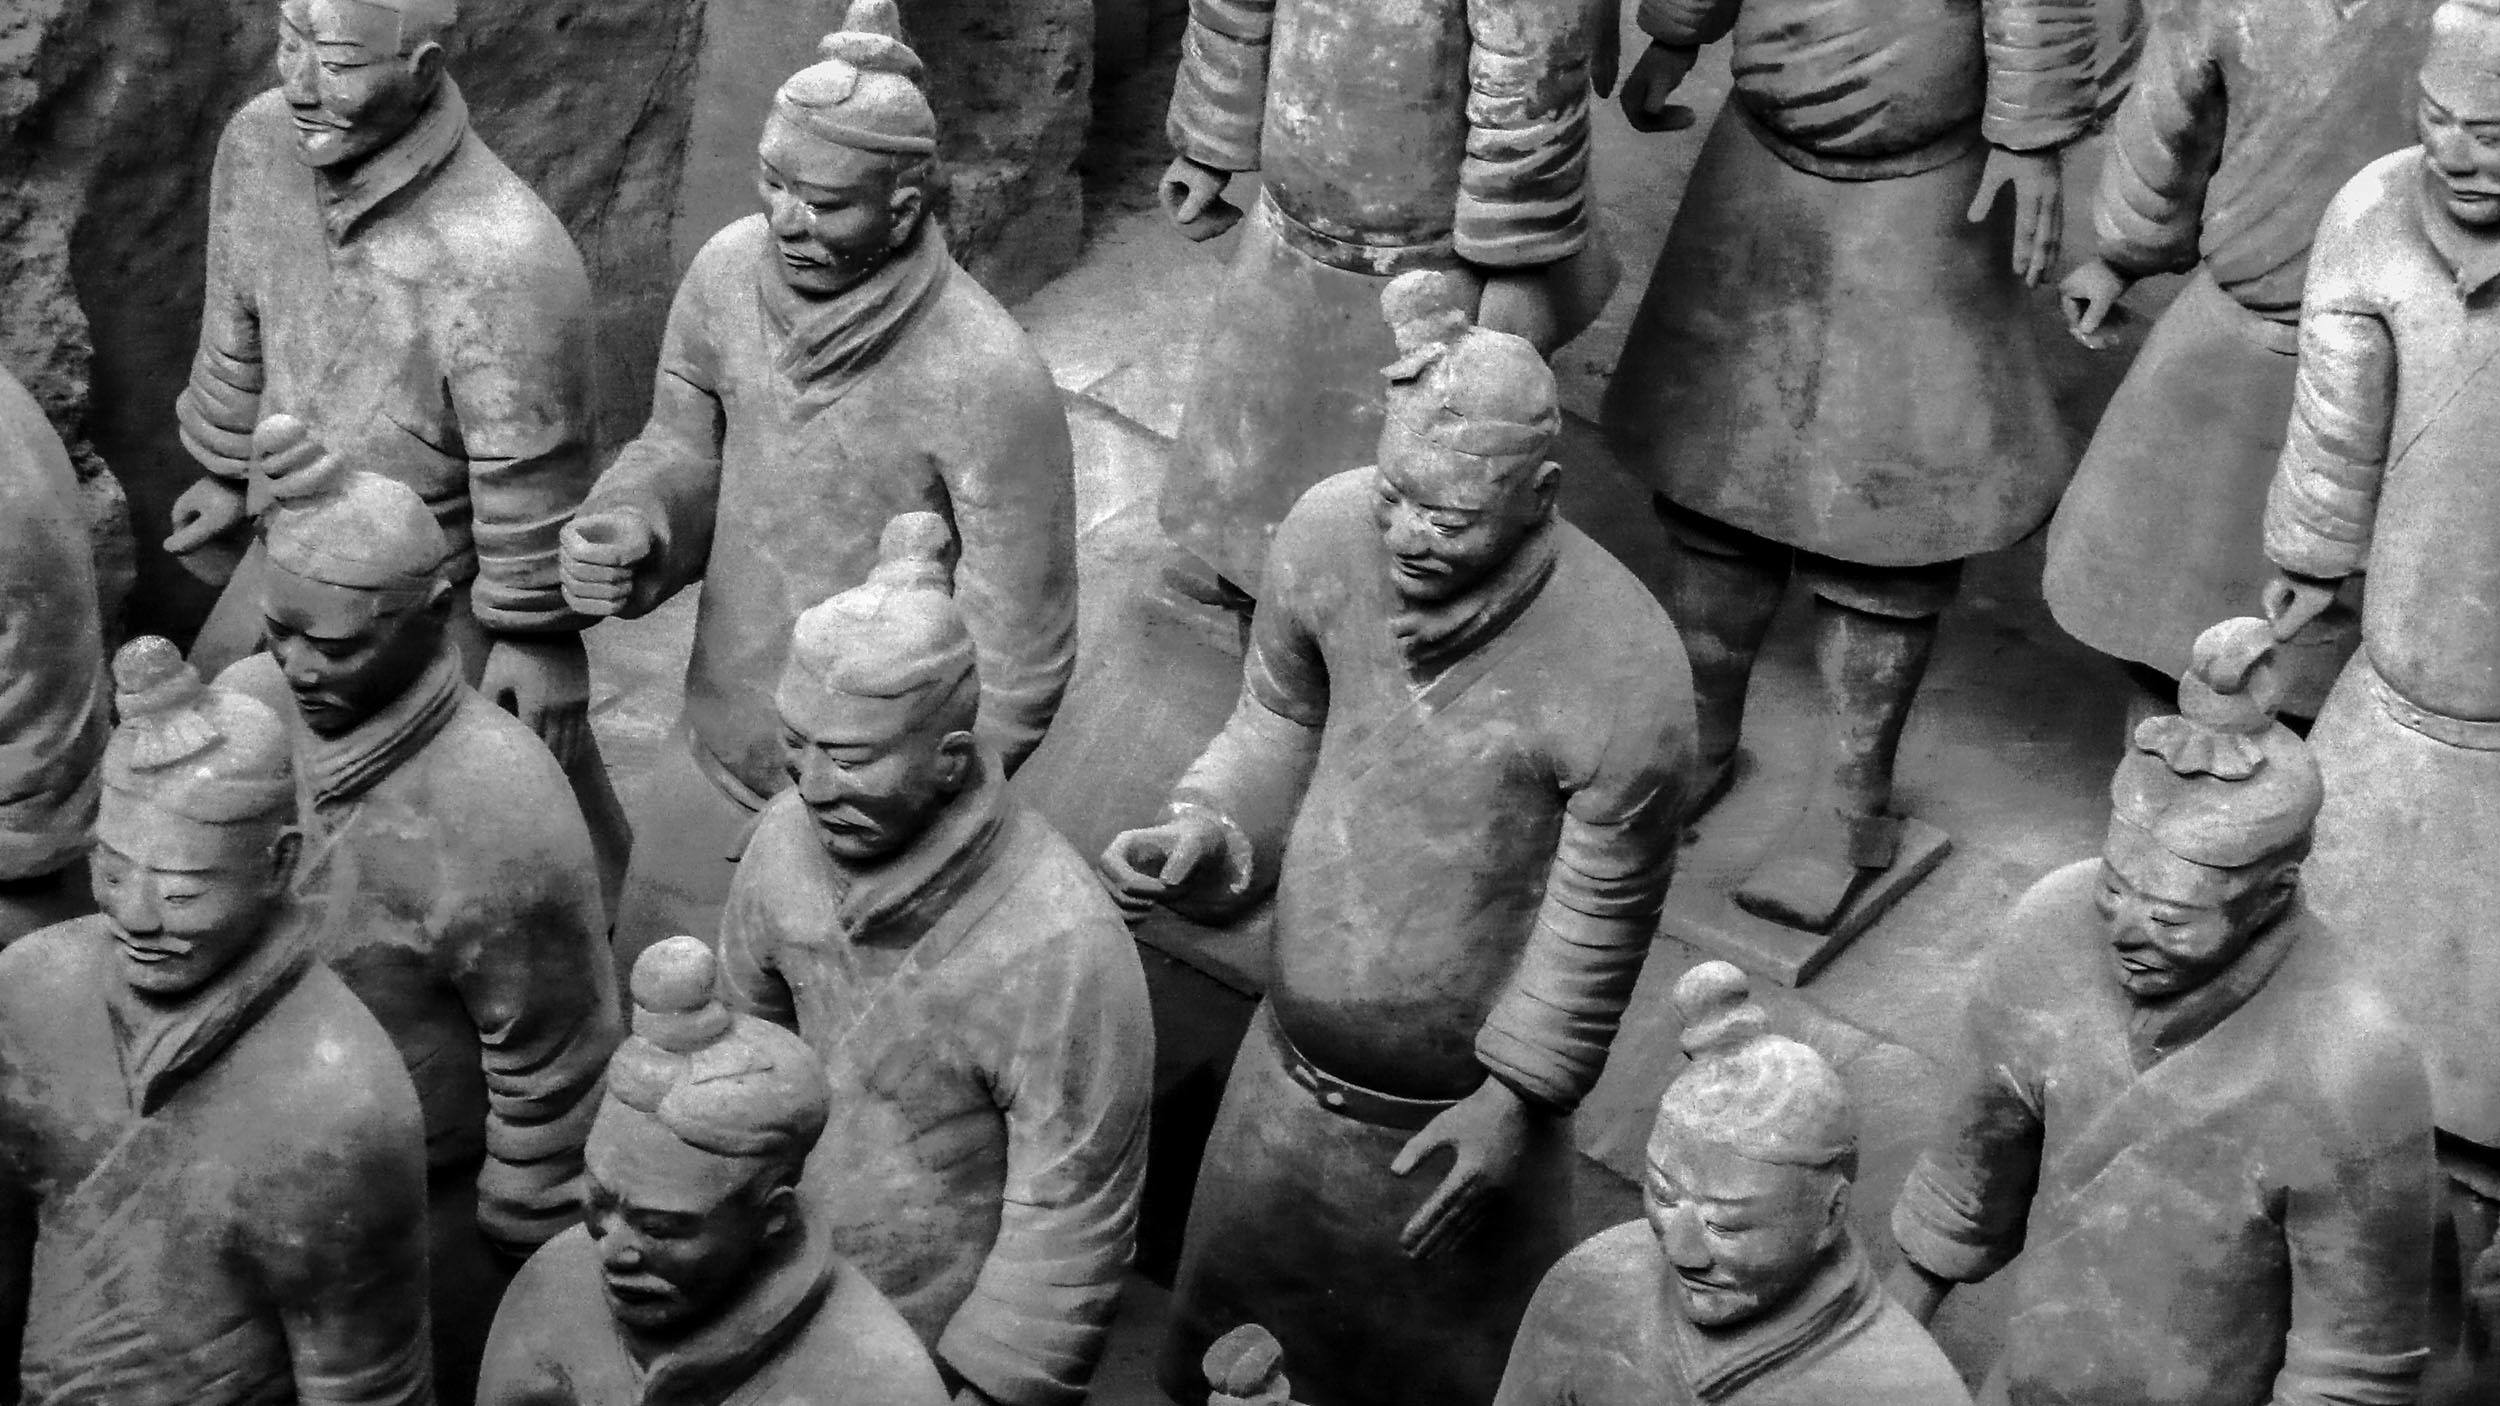 Closeup of the Terracotta Warriors in Xian China